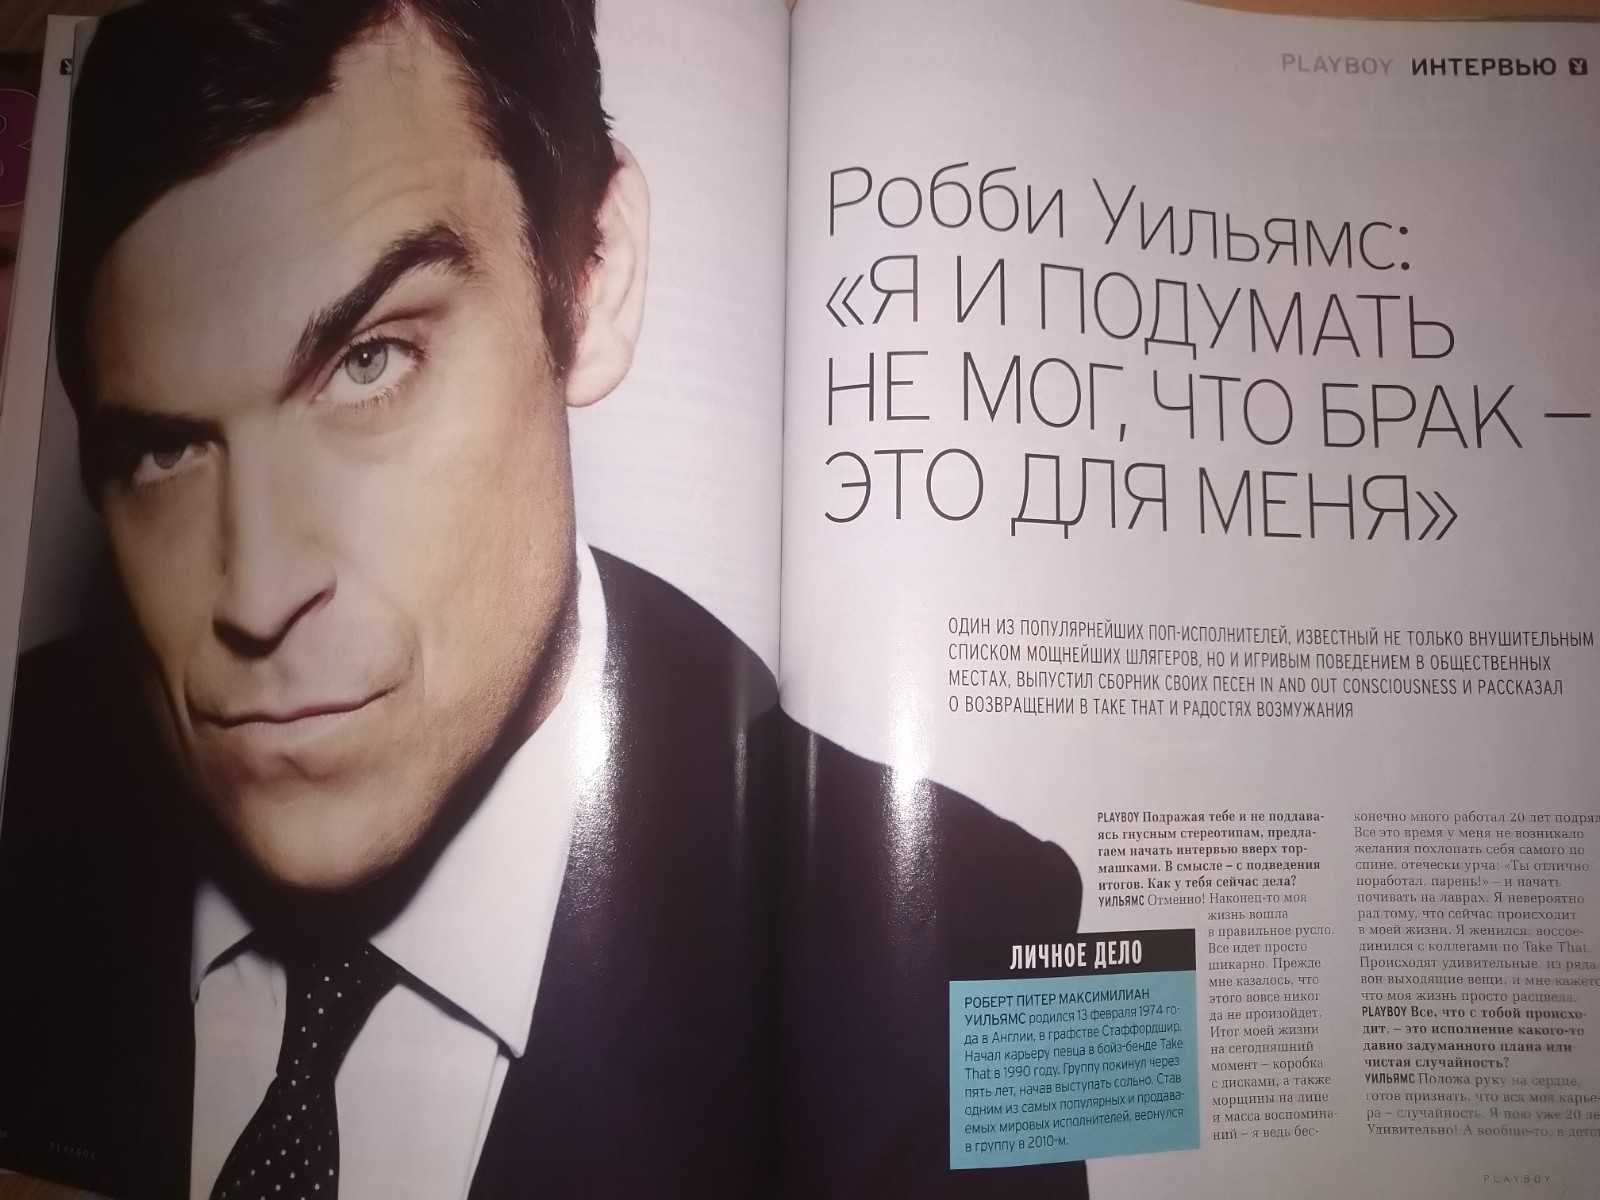 Журнал Playboy декабрь 2010